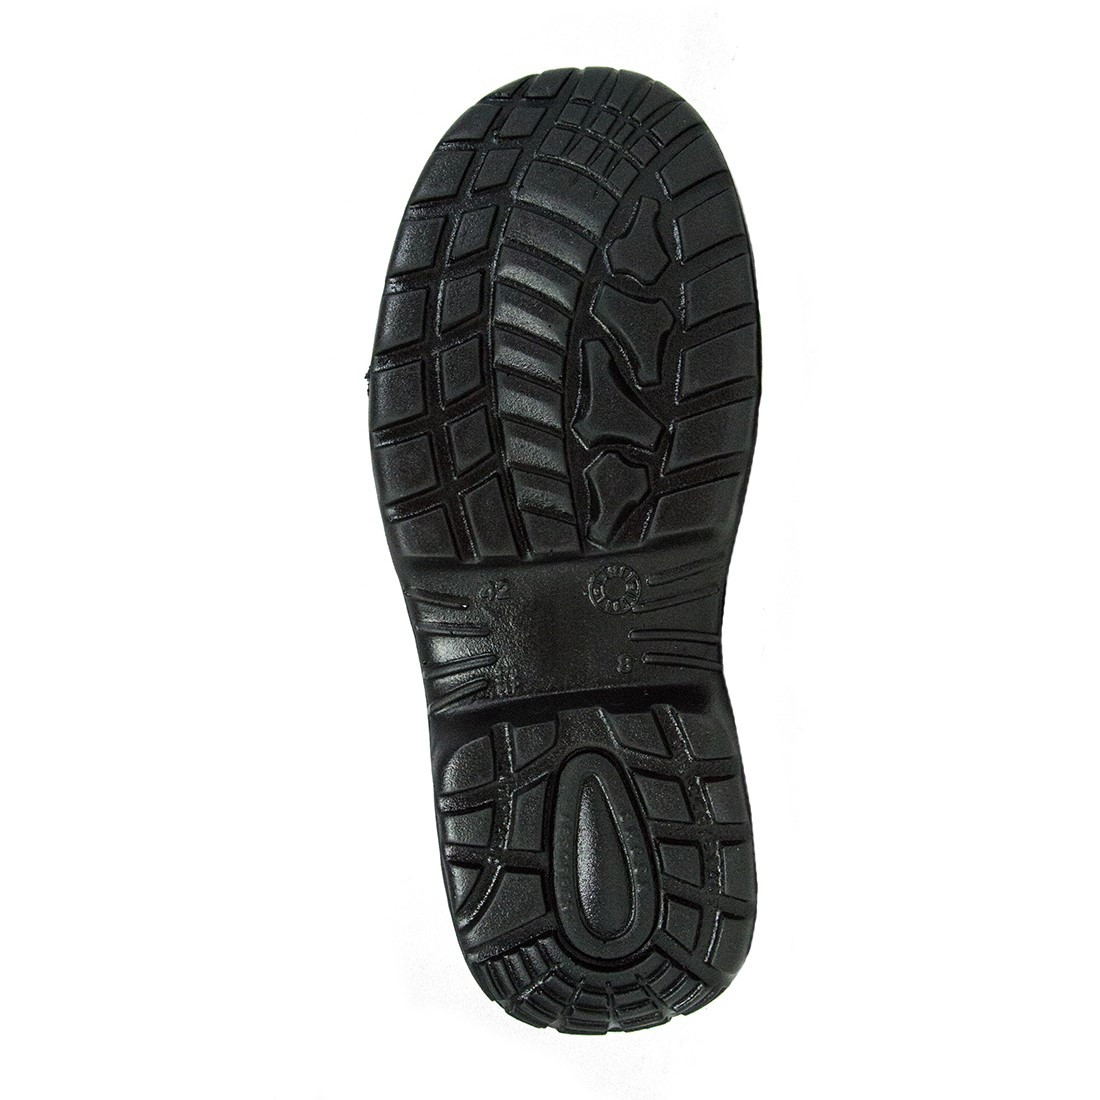 Pantofi Etoile S3 SRC - Incaltaminte de protectie | Bocanci, Pantofi, Sandale, Cizme